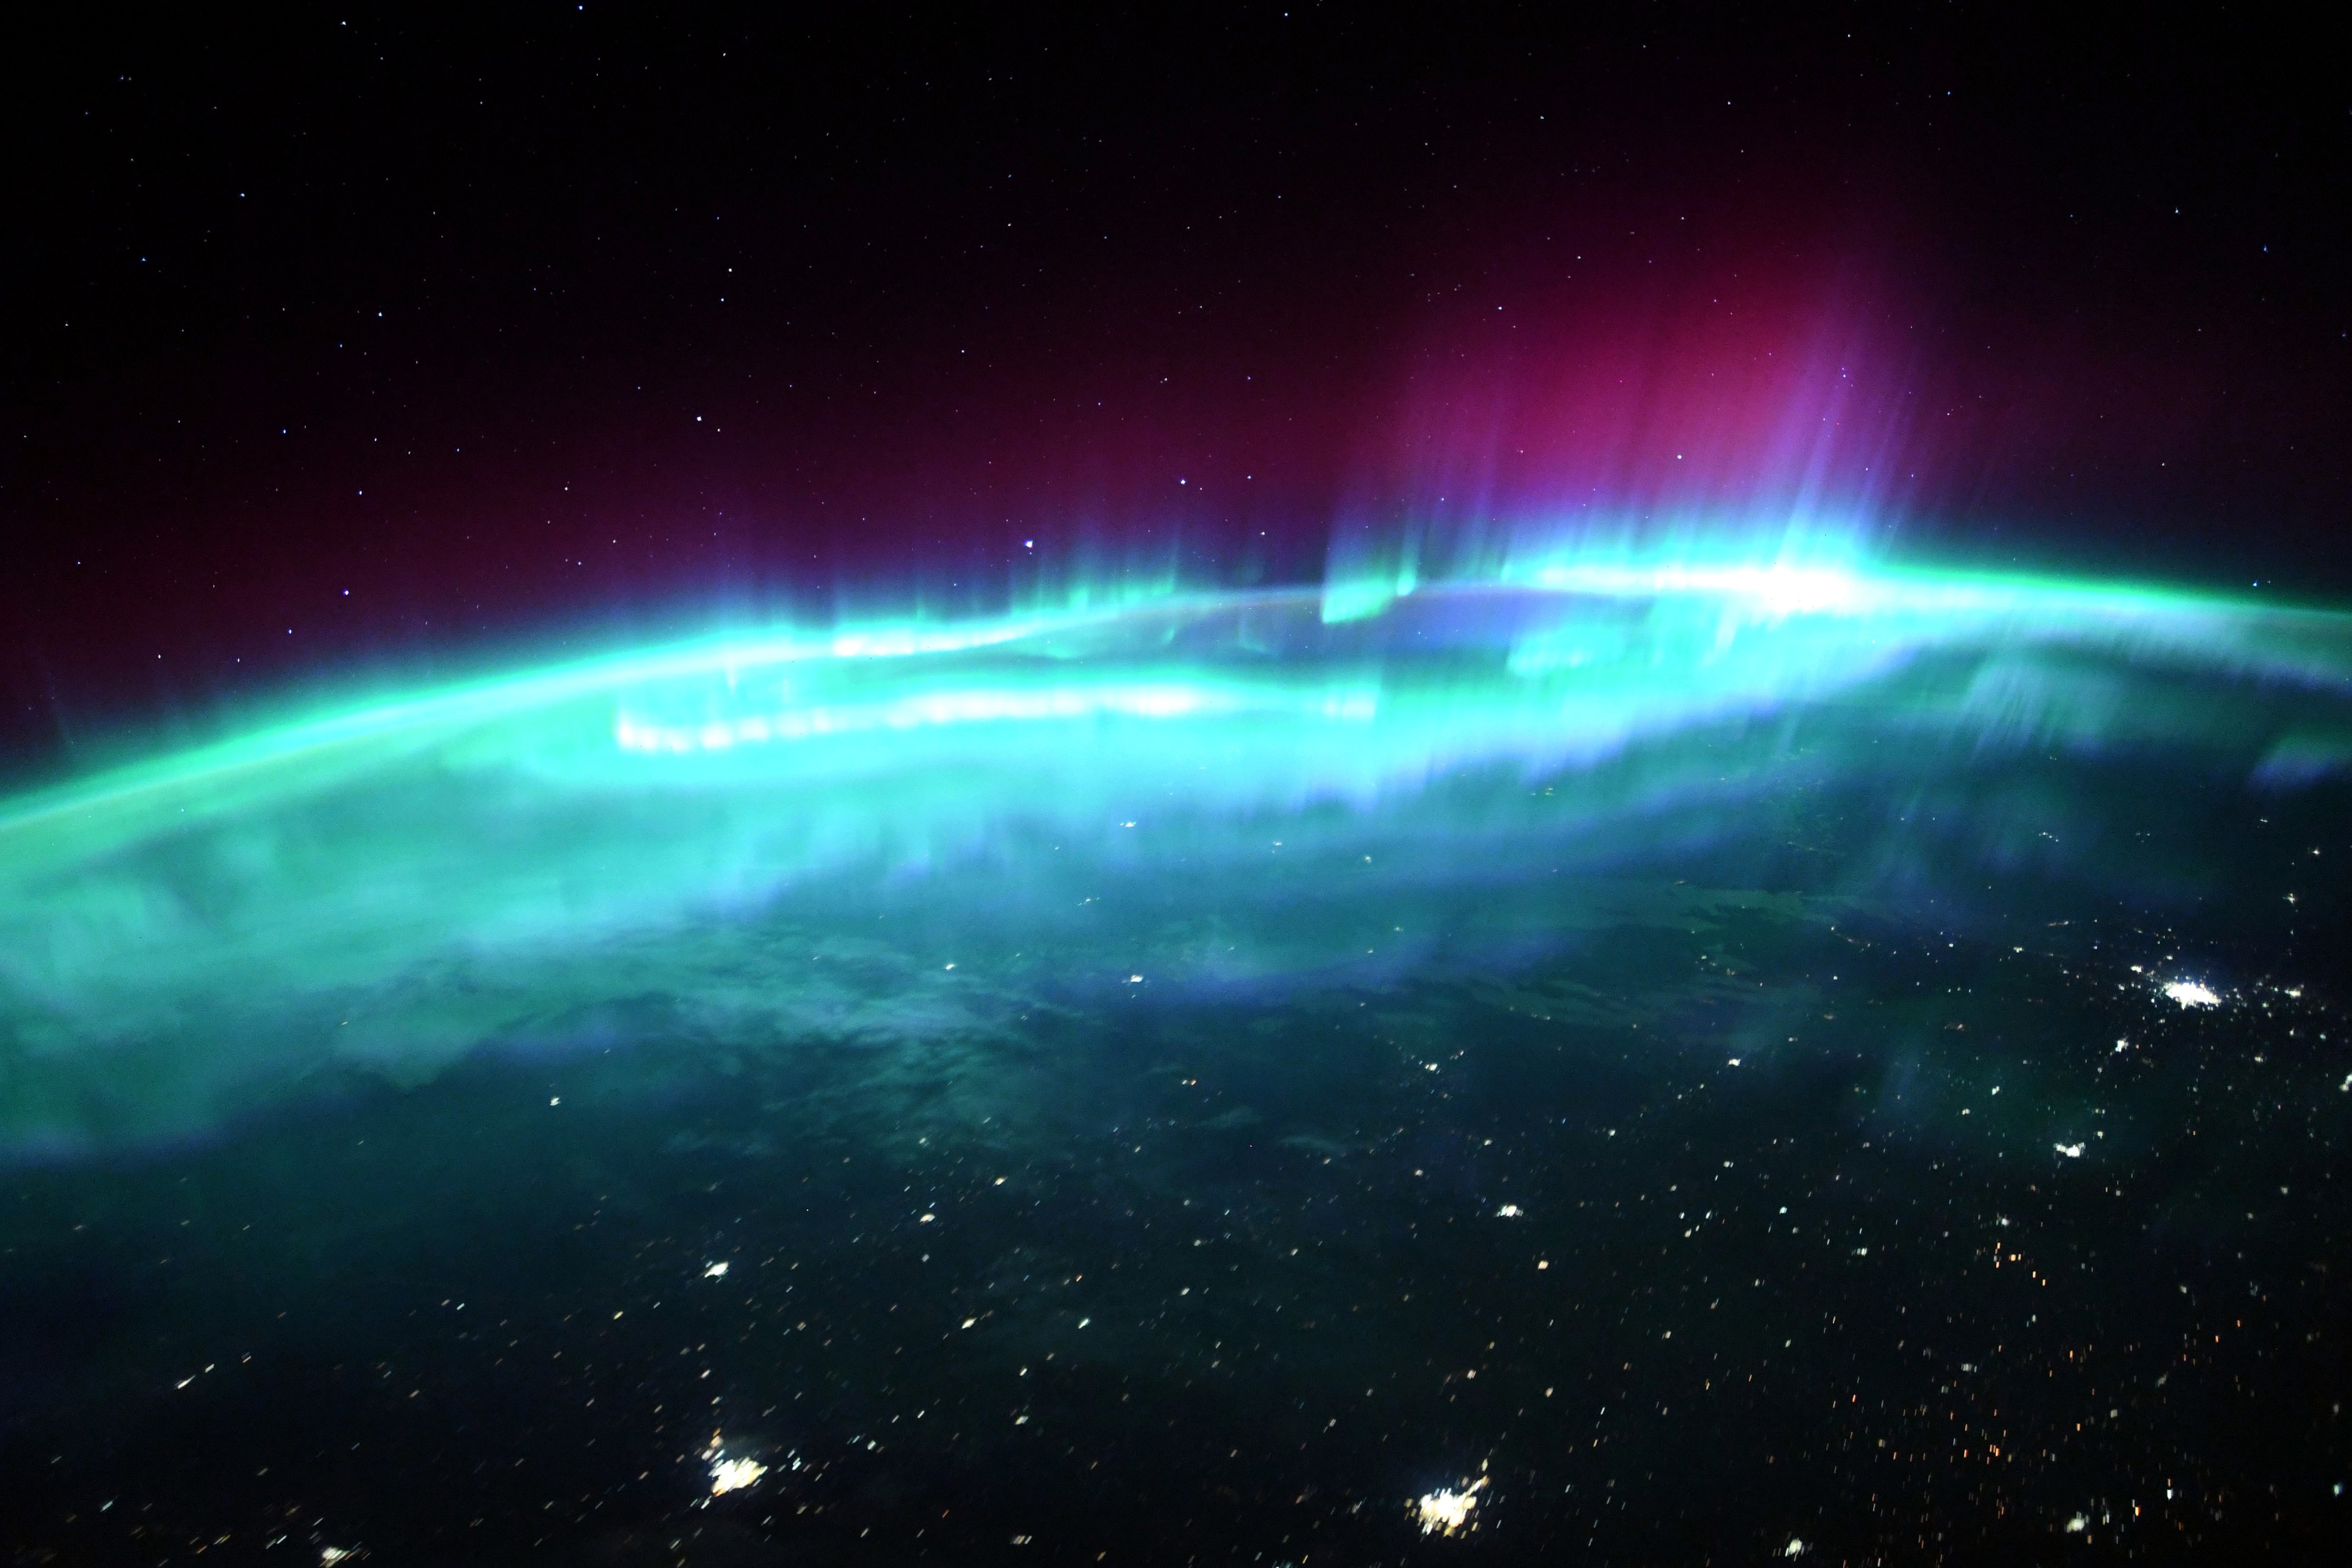 "Схоже на дихання". Астронавт МКС зняв із космосу сильне полярне сяйво – фото